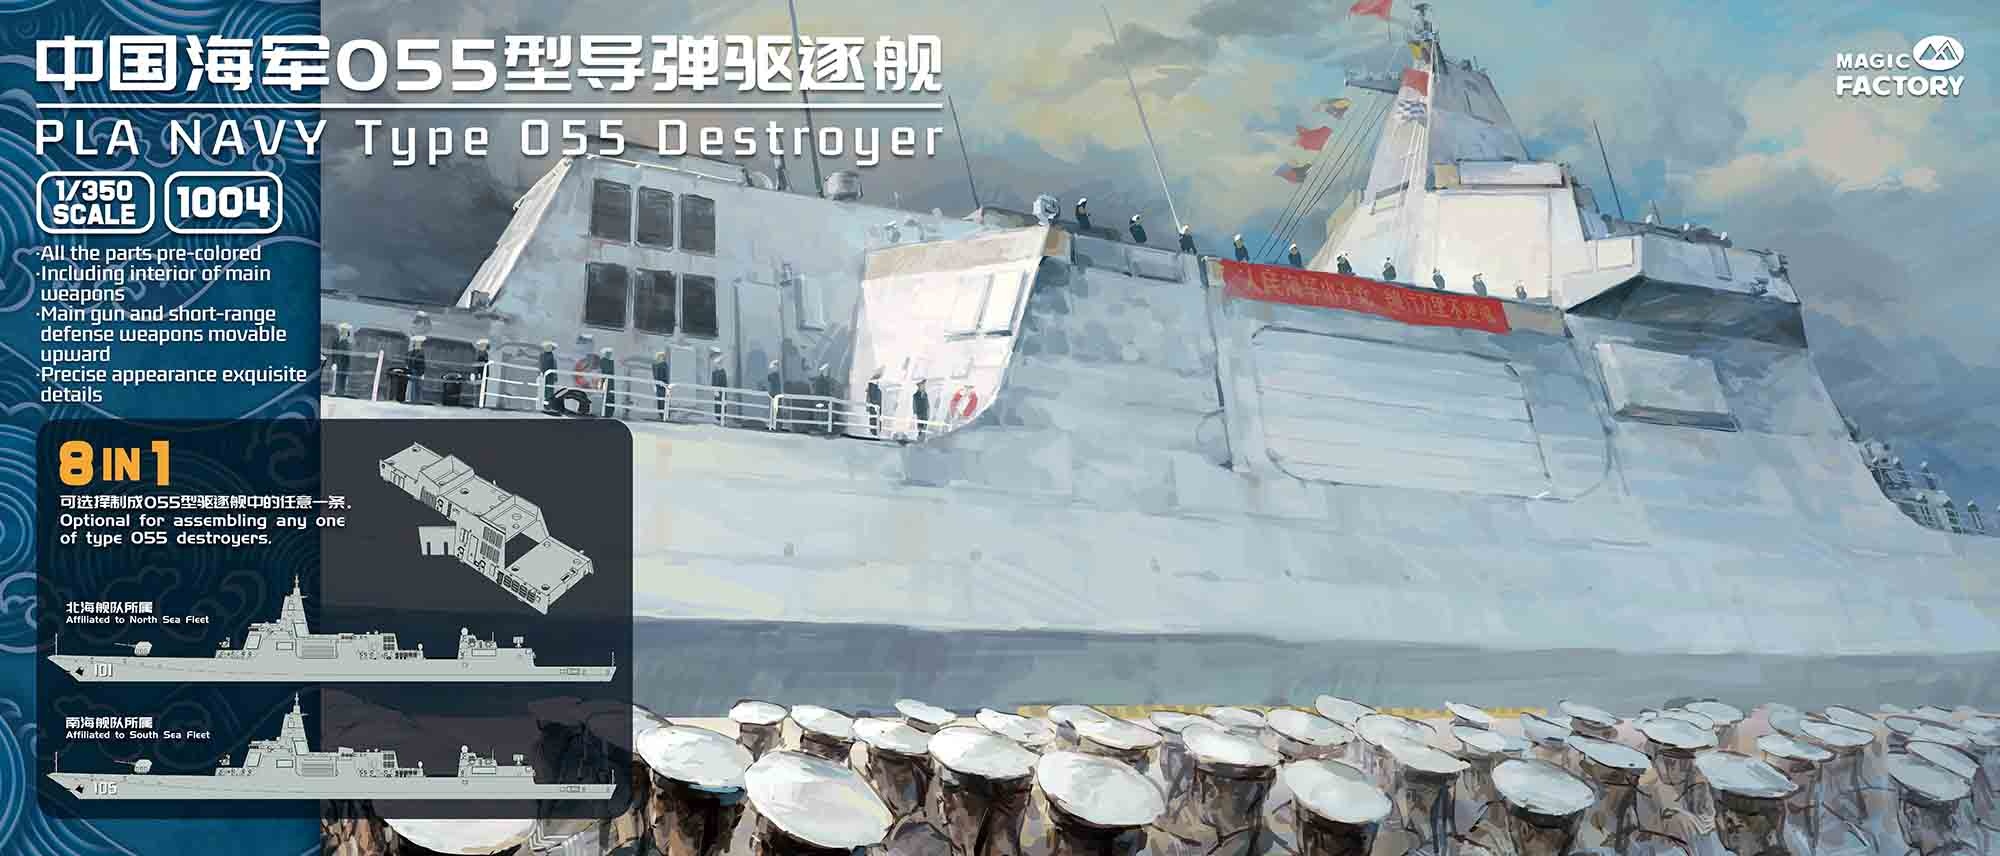 1/350 中国人民解放軍海軍 055型駆逐艦 (8 in 1)